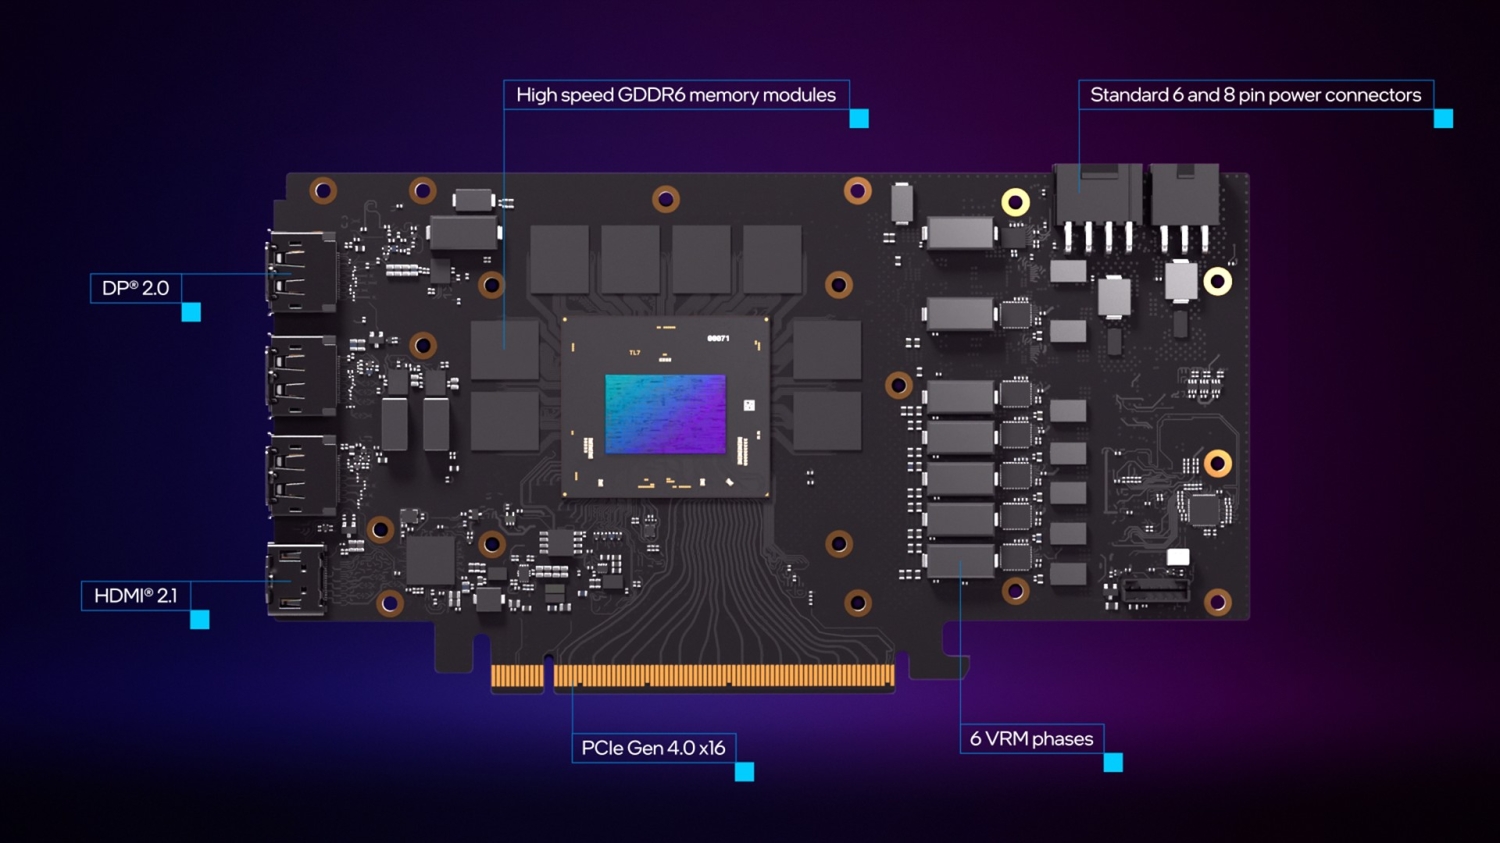 Intel Arc A770 Limited Edition GPU tear down, you still can't buy it